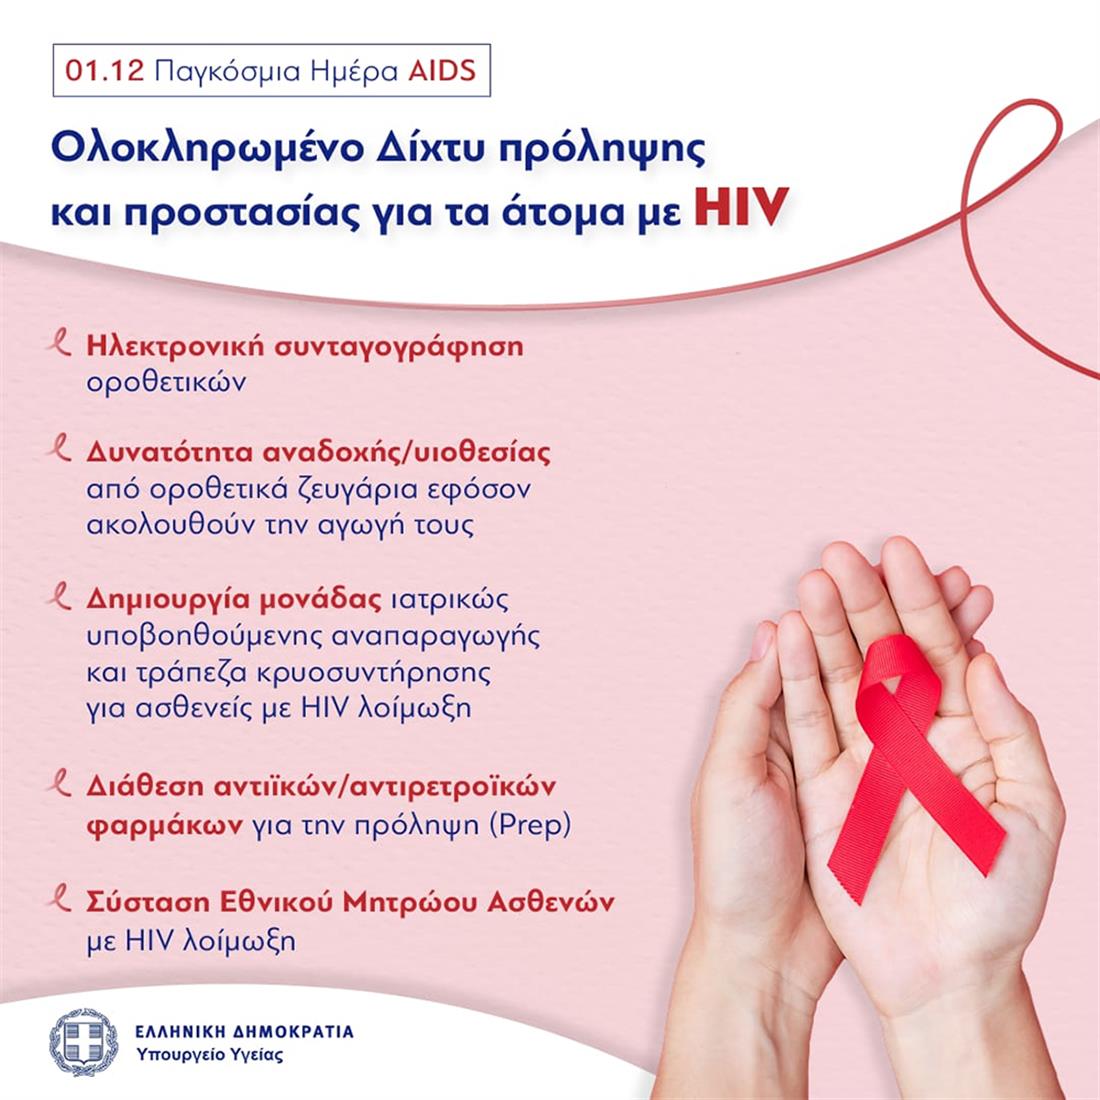 Παγκόσμια Ημέρα AIDS - Ελληνική Δημοκρατία